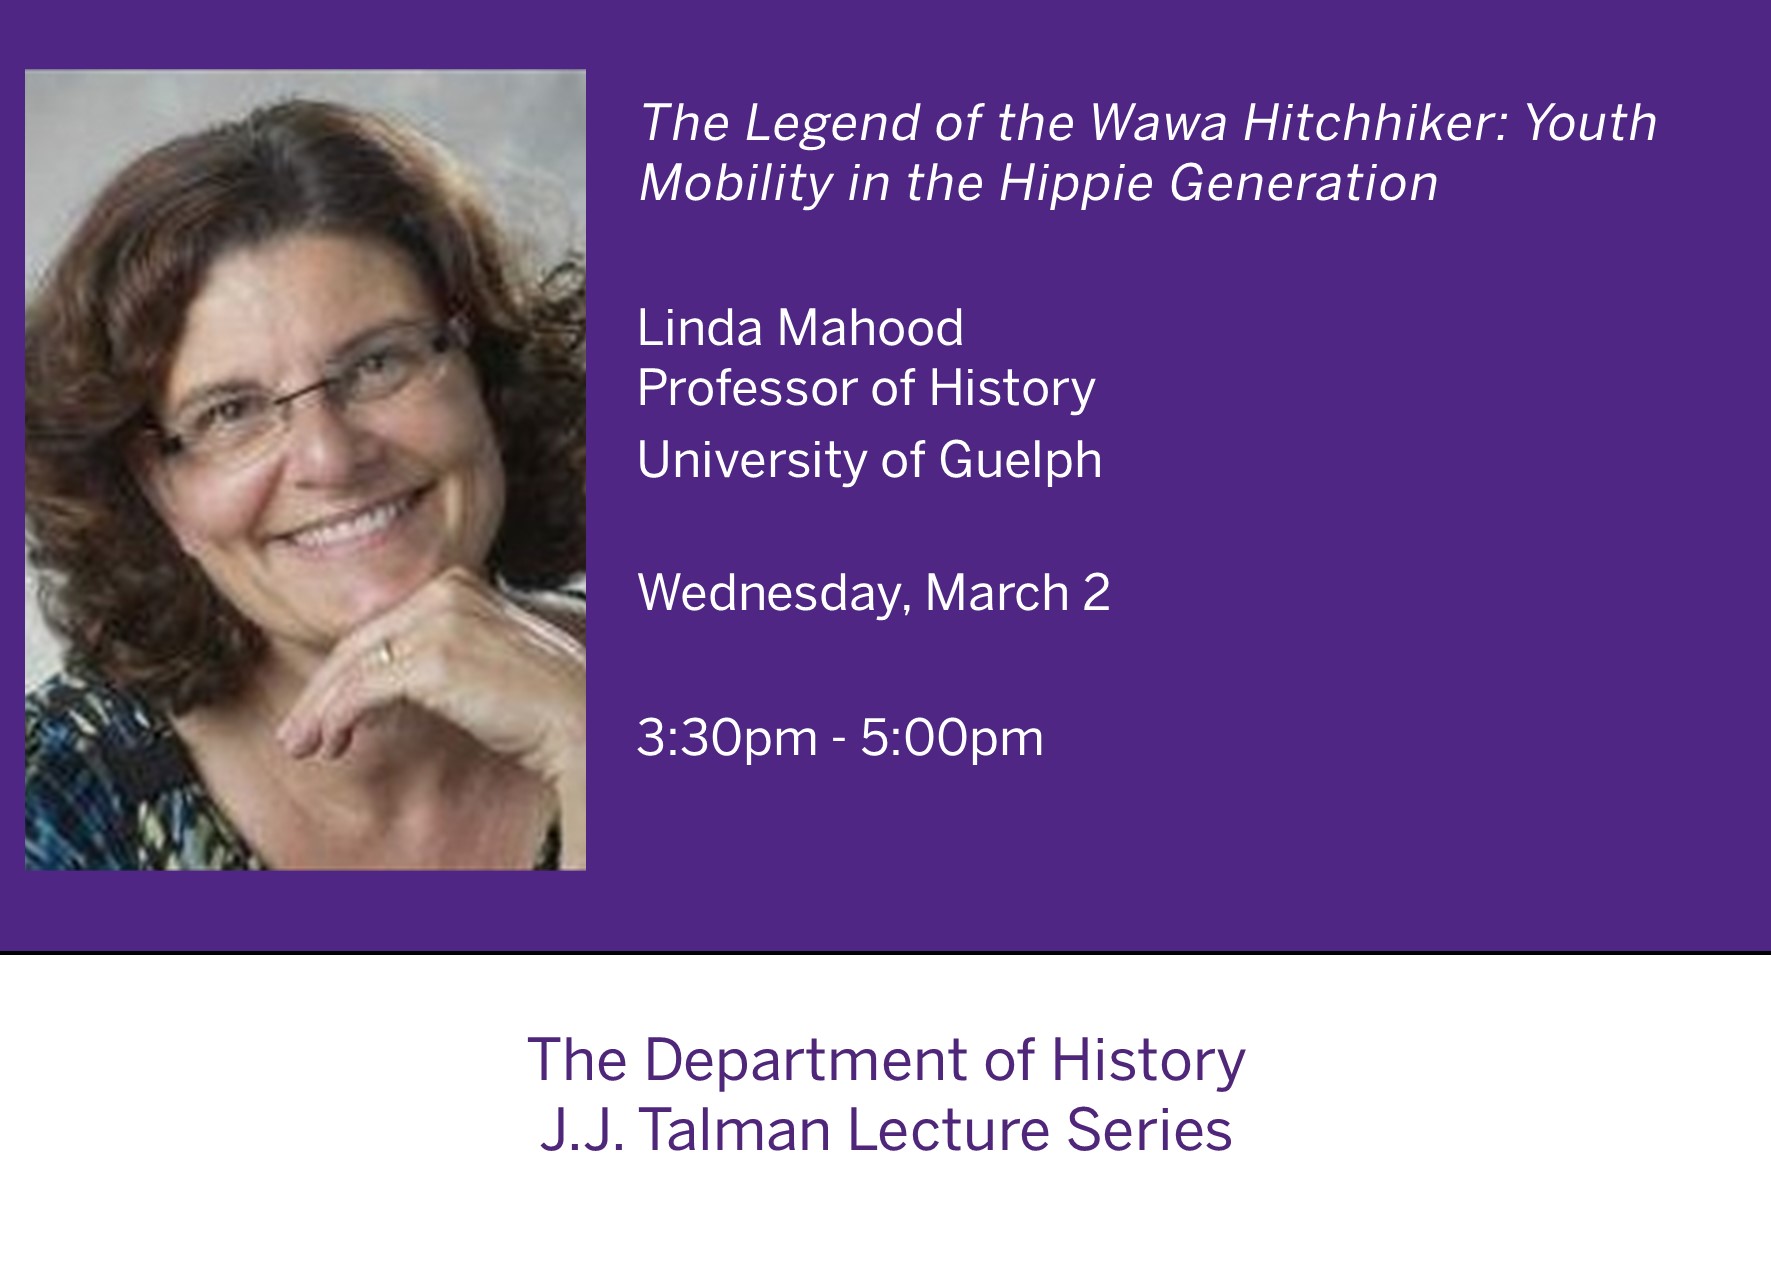 Linda Mahood - JJ Talman Lecture Series